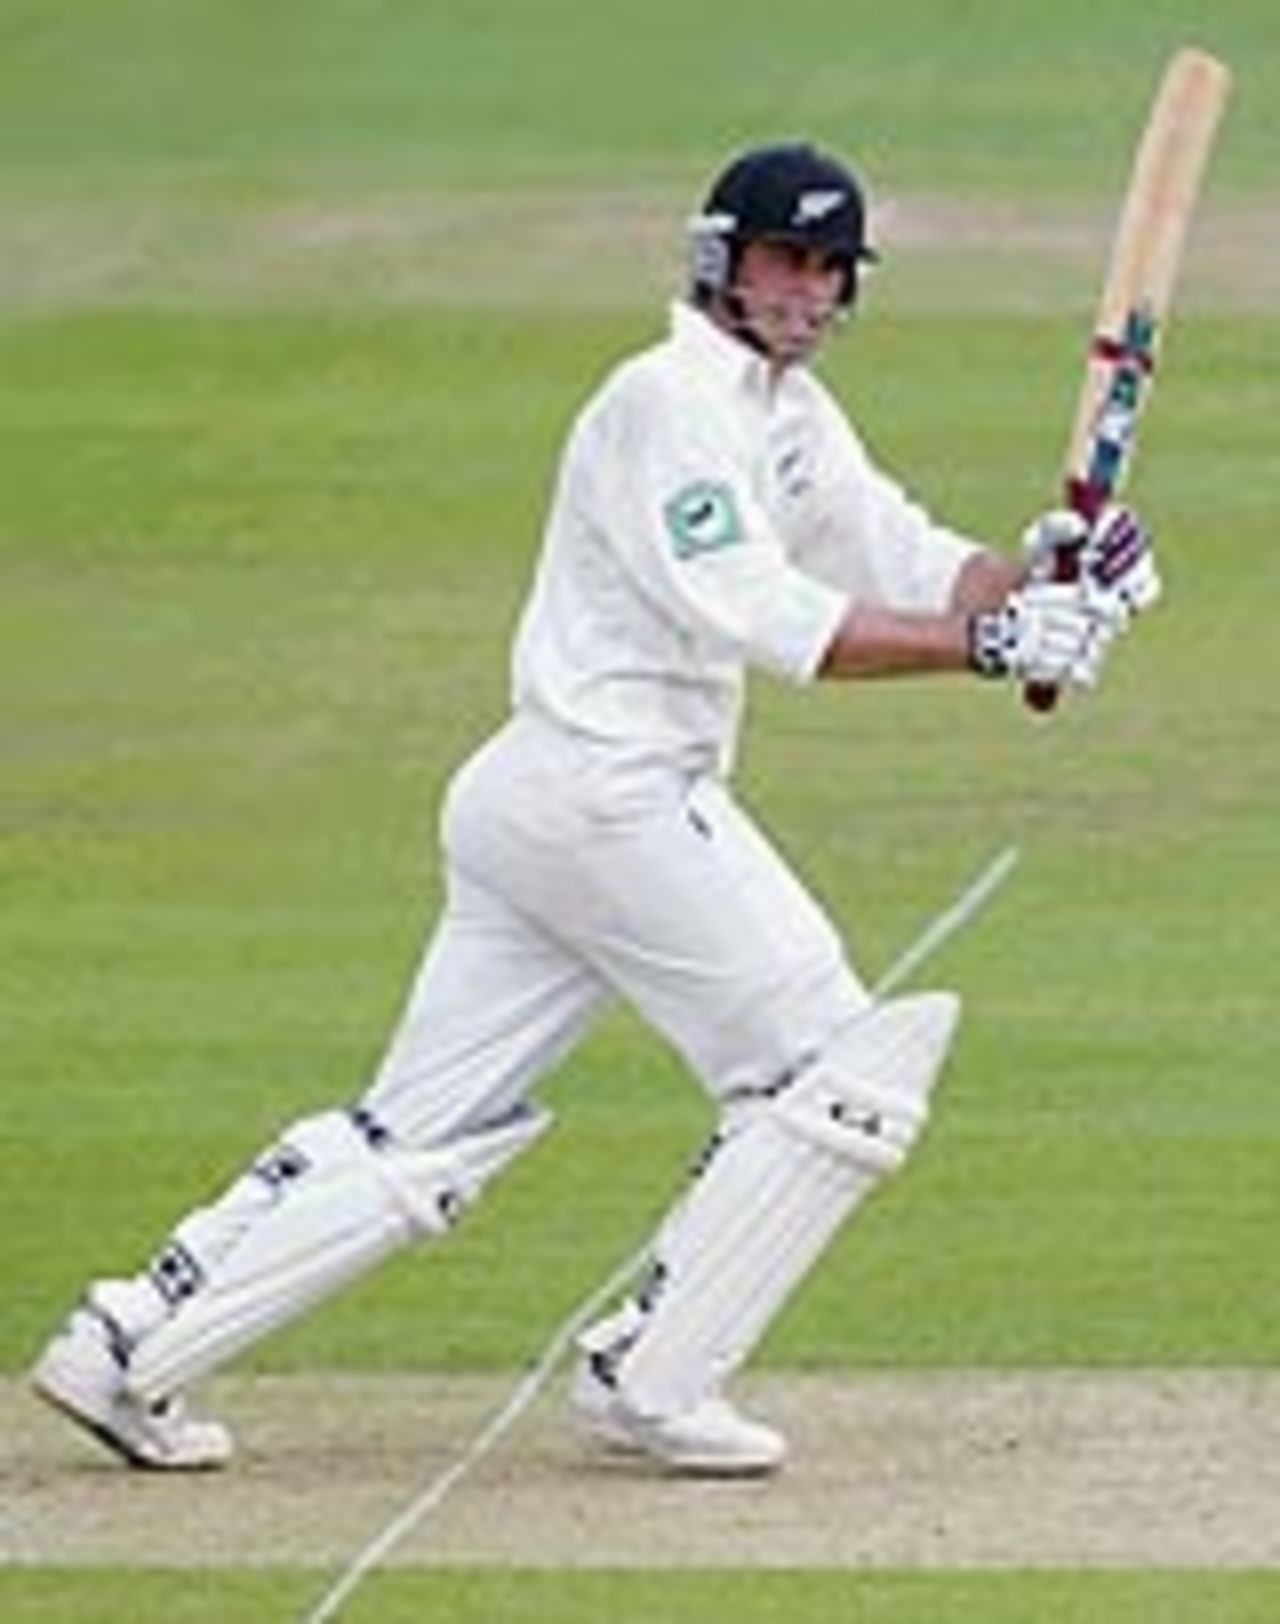 Mark Richardson batting, England v New Zealand, 1st Test, Lord's, May 20, 2004